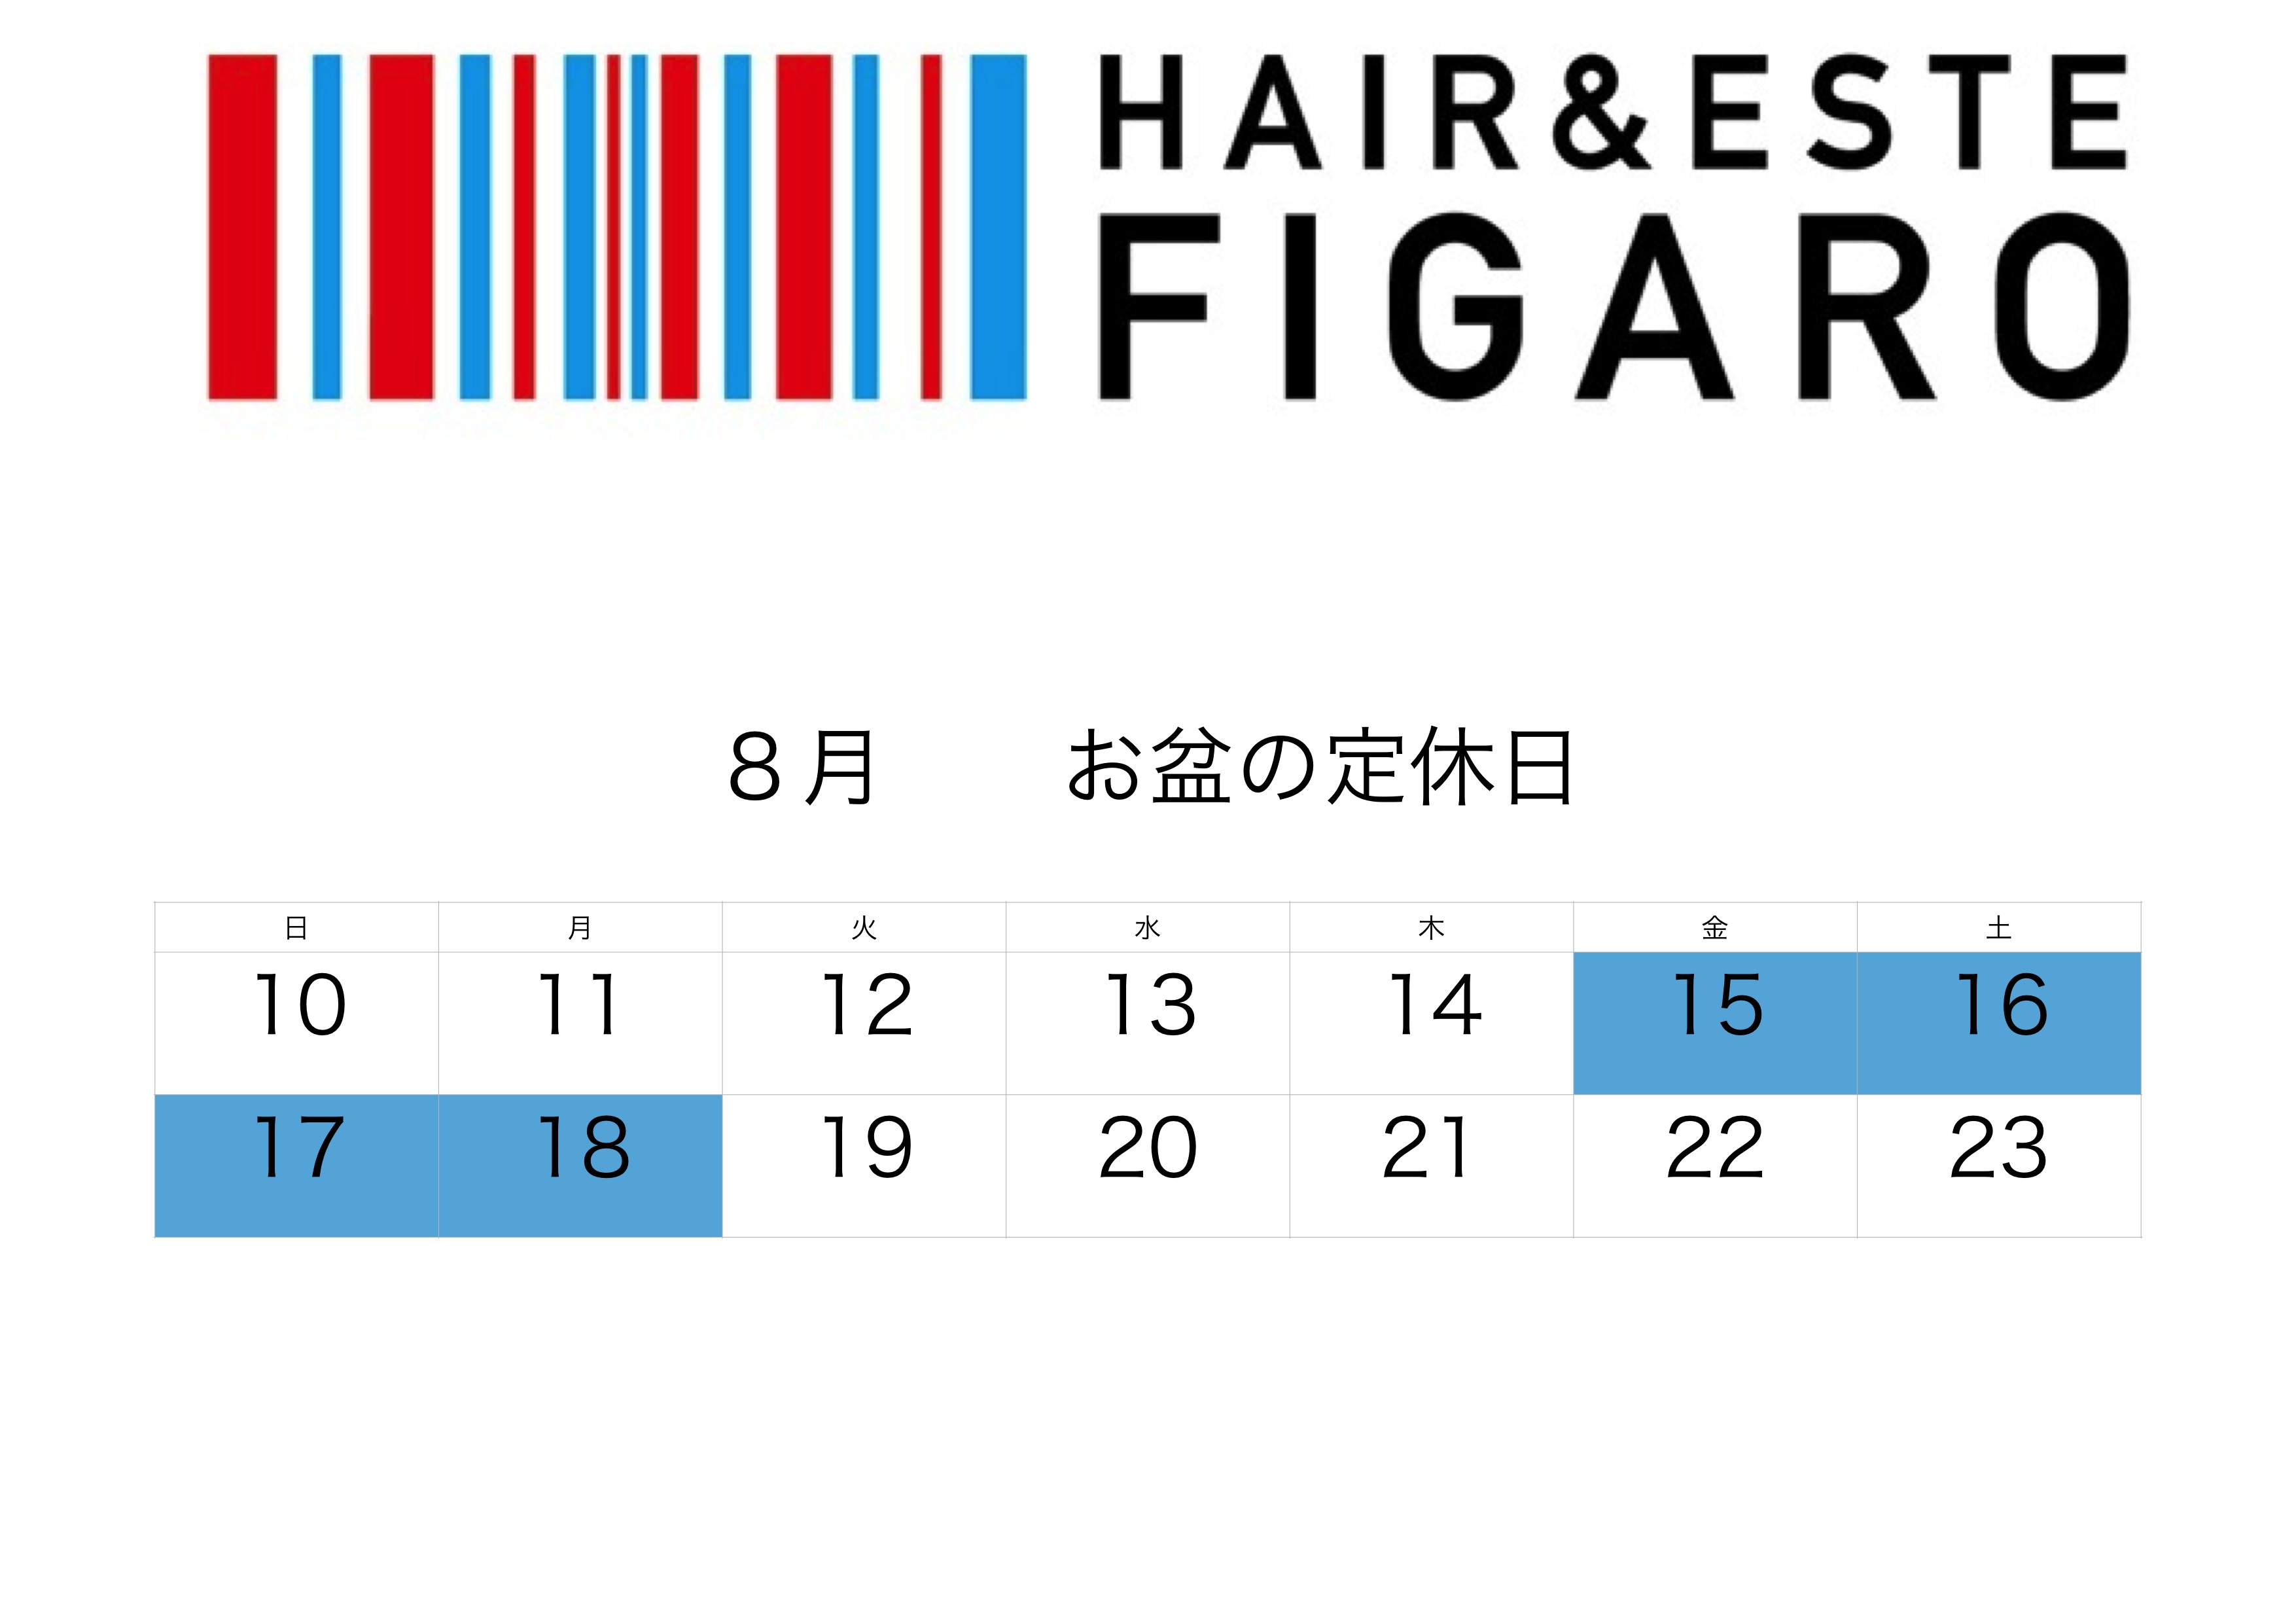 http://figaro-hair.com/blog/%E5%90%8D%E7%A7%B0%E6%9C%AA%E8%A8%AD%E5%AE%9A_0001%20%E3%81%AE%E3%82%B3%E3%83%94%E3%83%BC%202.jpg